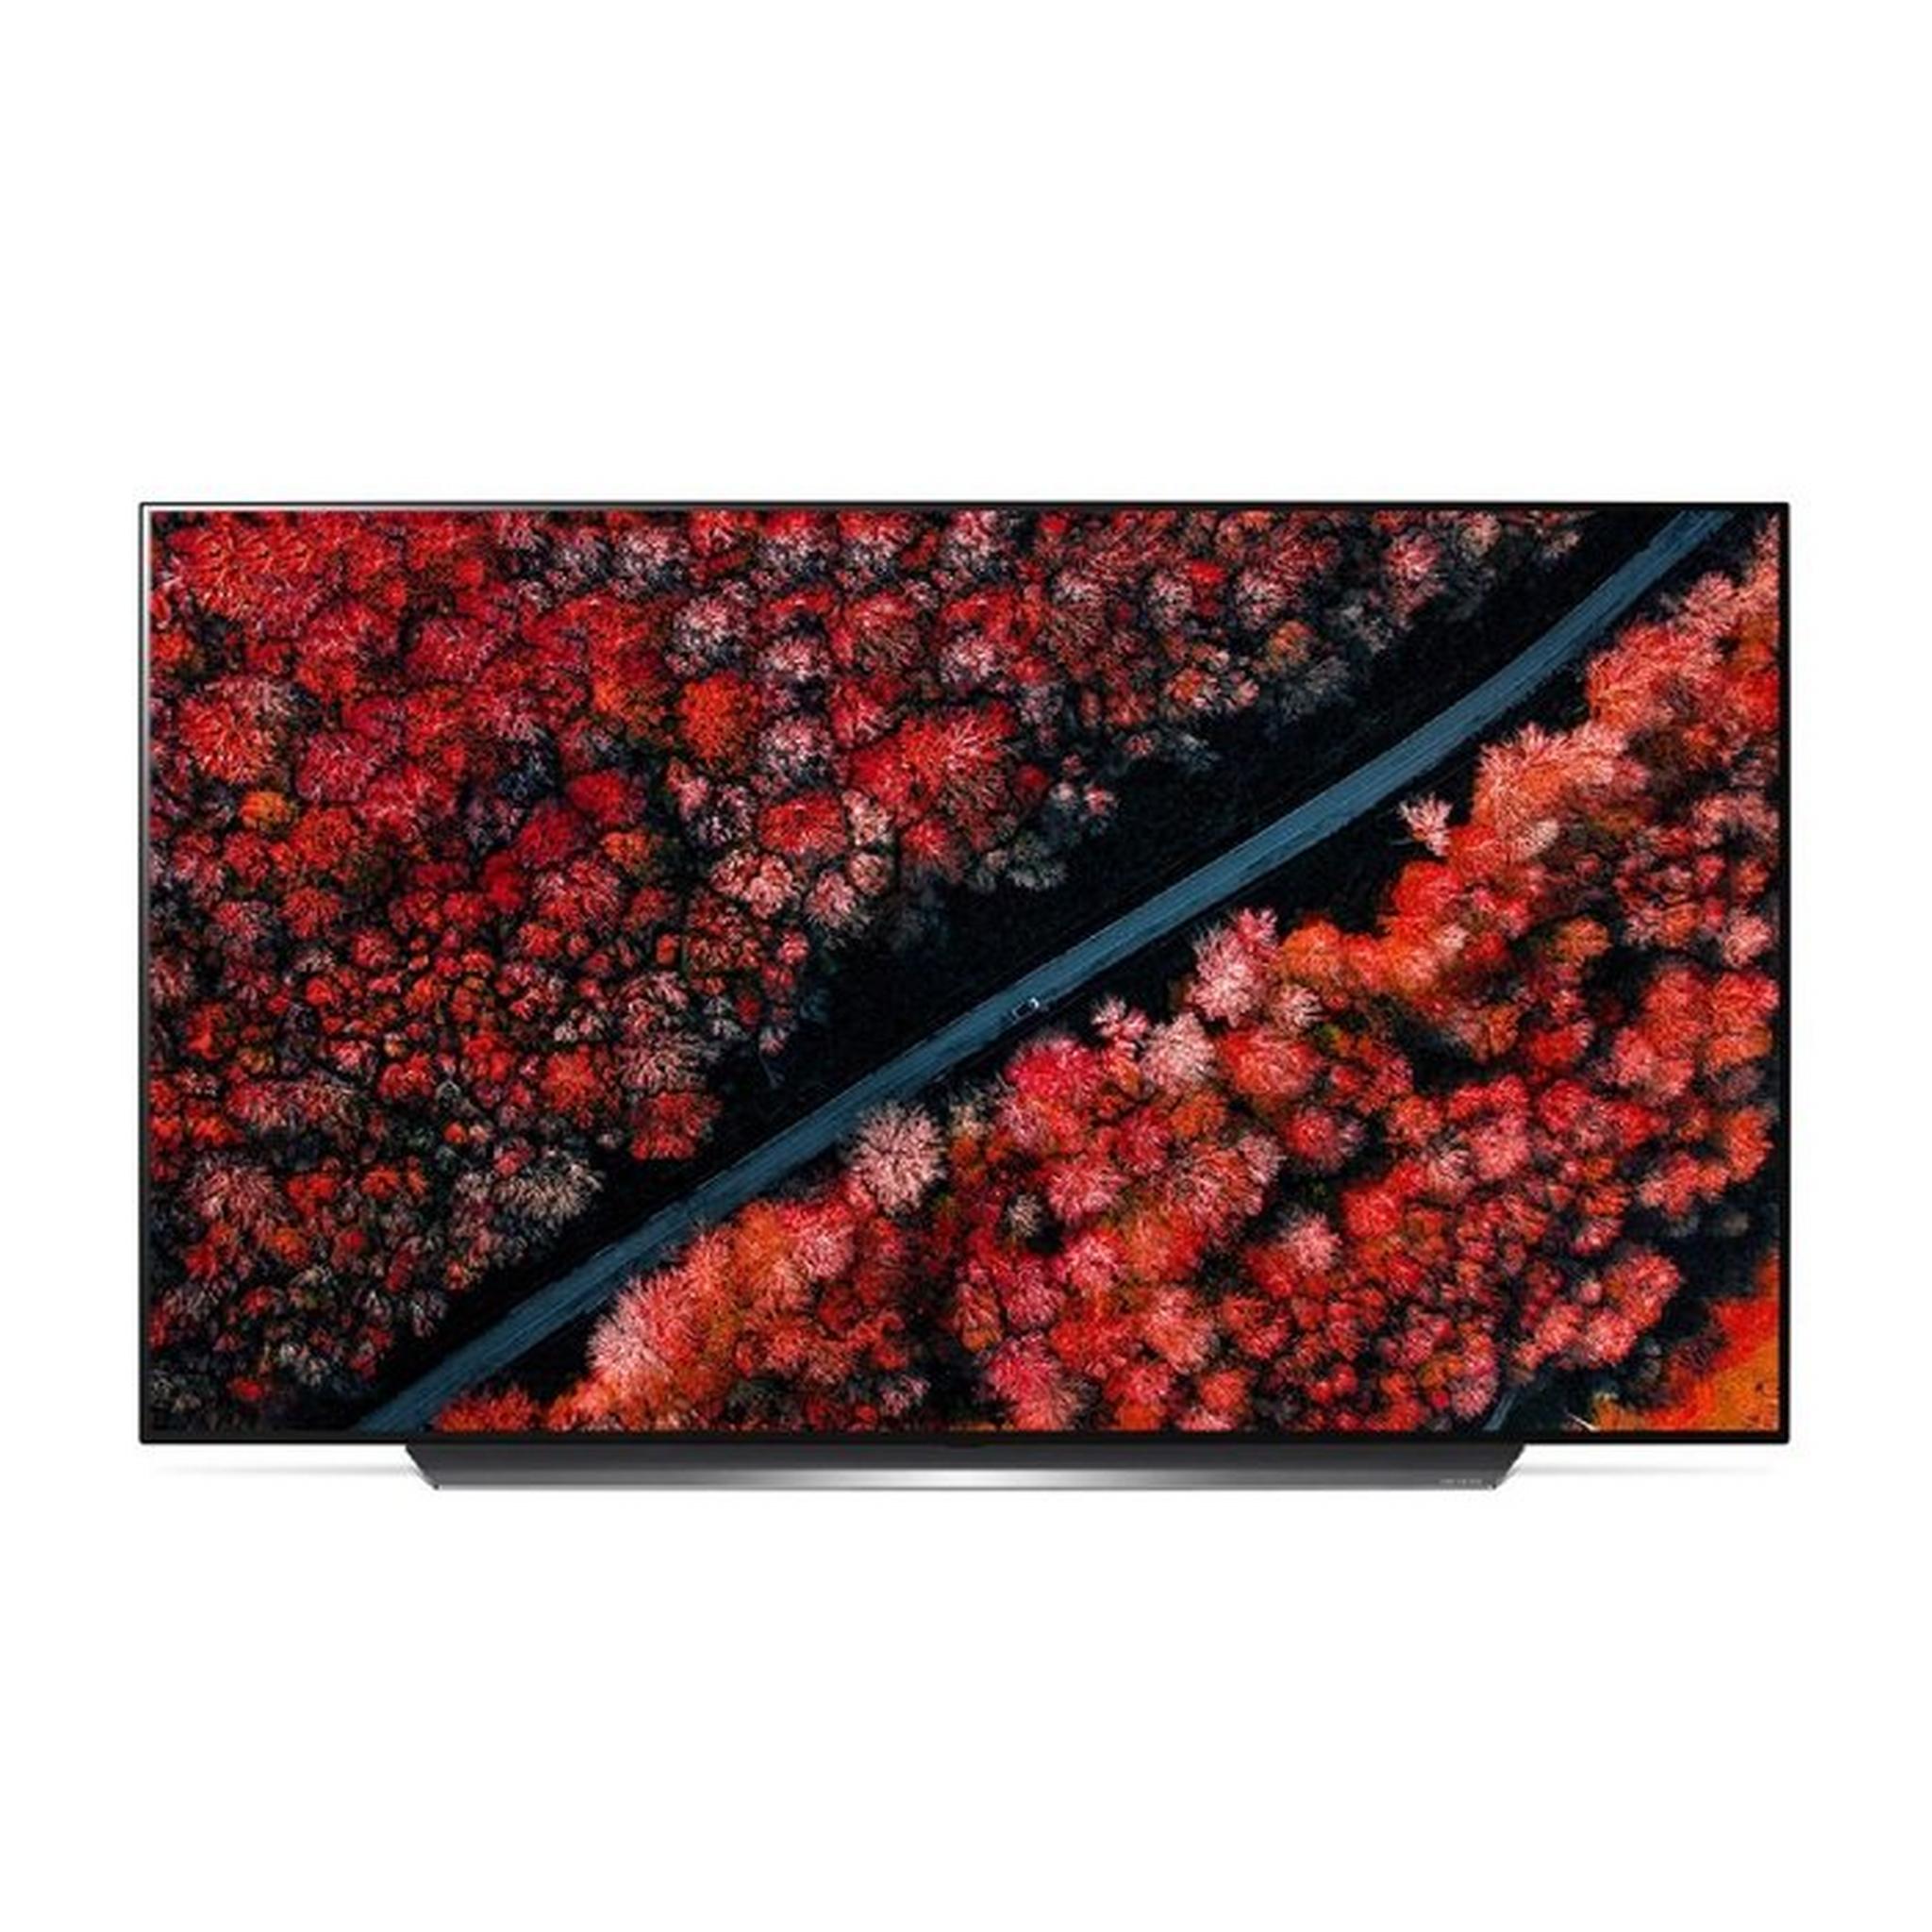 LG 65-inch 4K HDR Smart OLED TV - (65C9PVA)